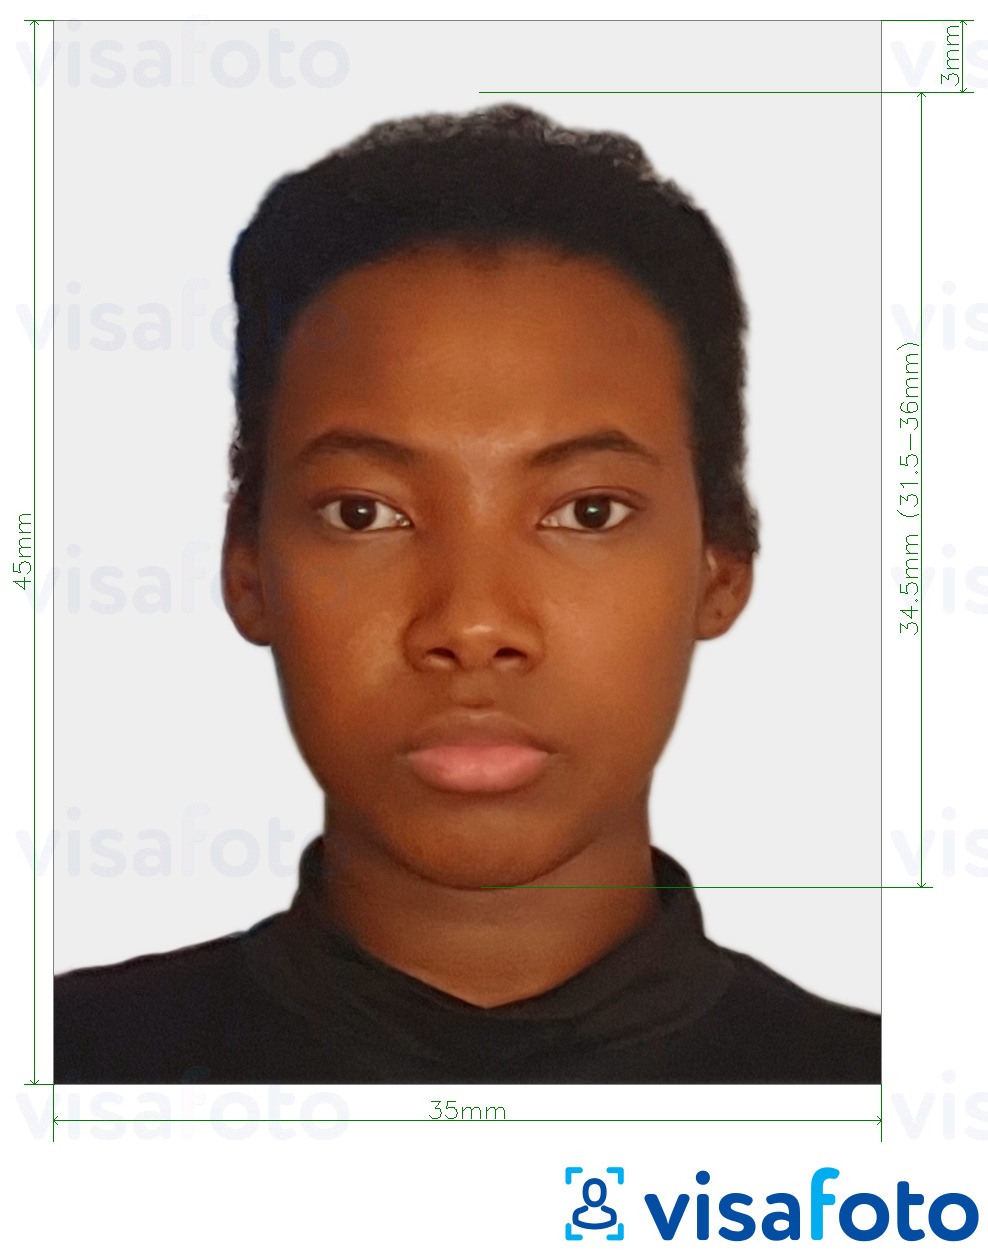 Contoh foto untuk Cote d'Ivoire visa 4.5x3.5 cm (45x35 mm) dengan spesifikasi saiz yang tepat.